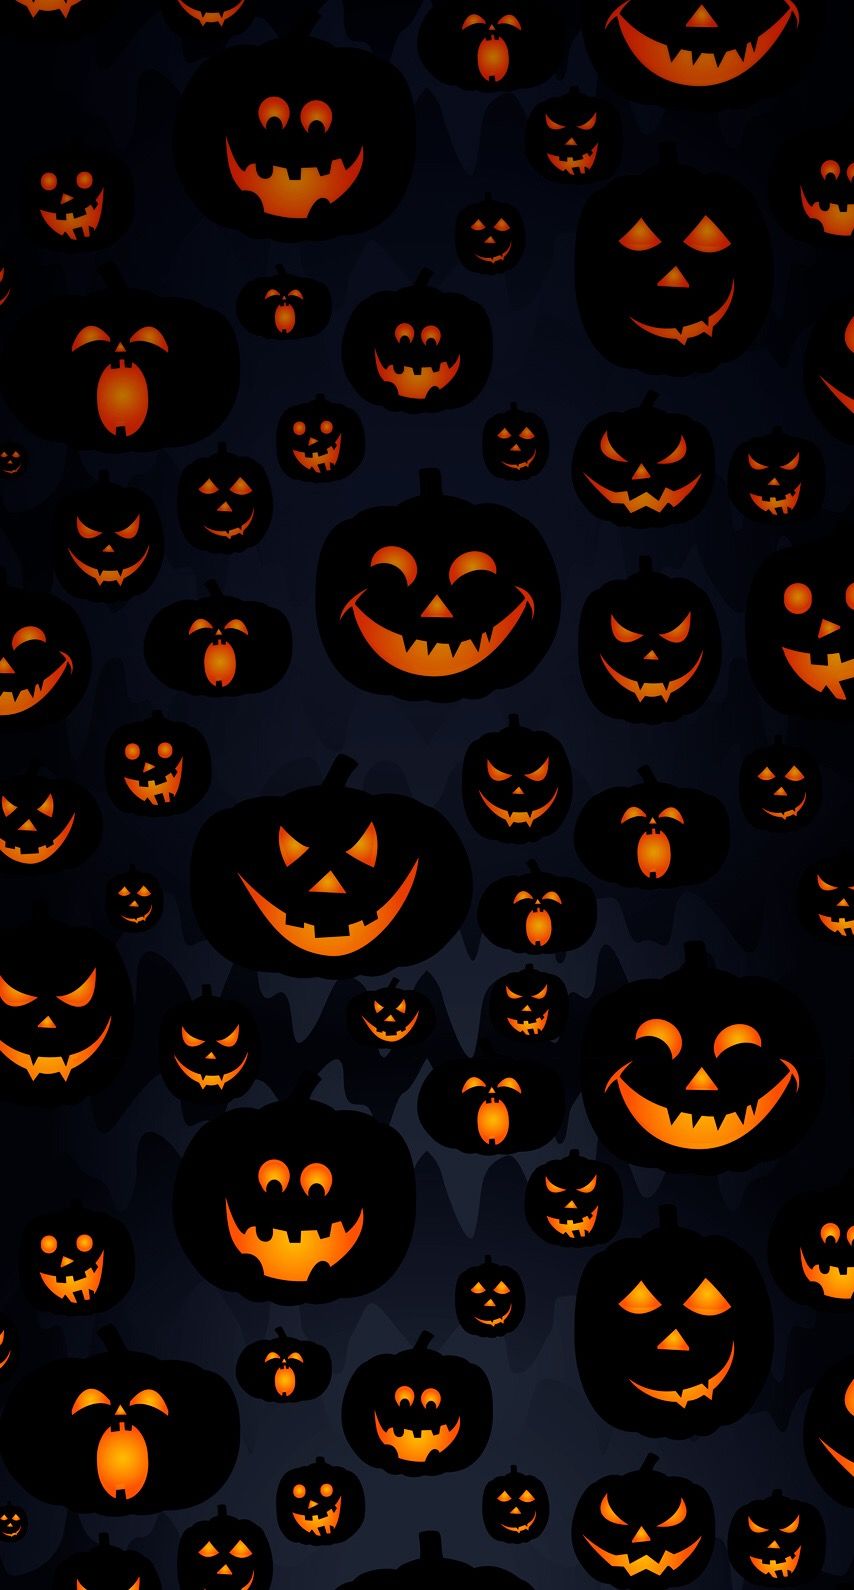 iPhone Wall: Halloween tjn | iPhone Walls: Halloween | Halloween